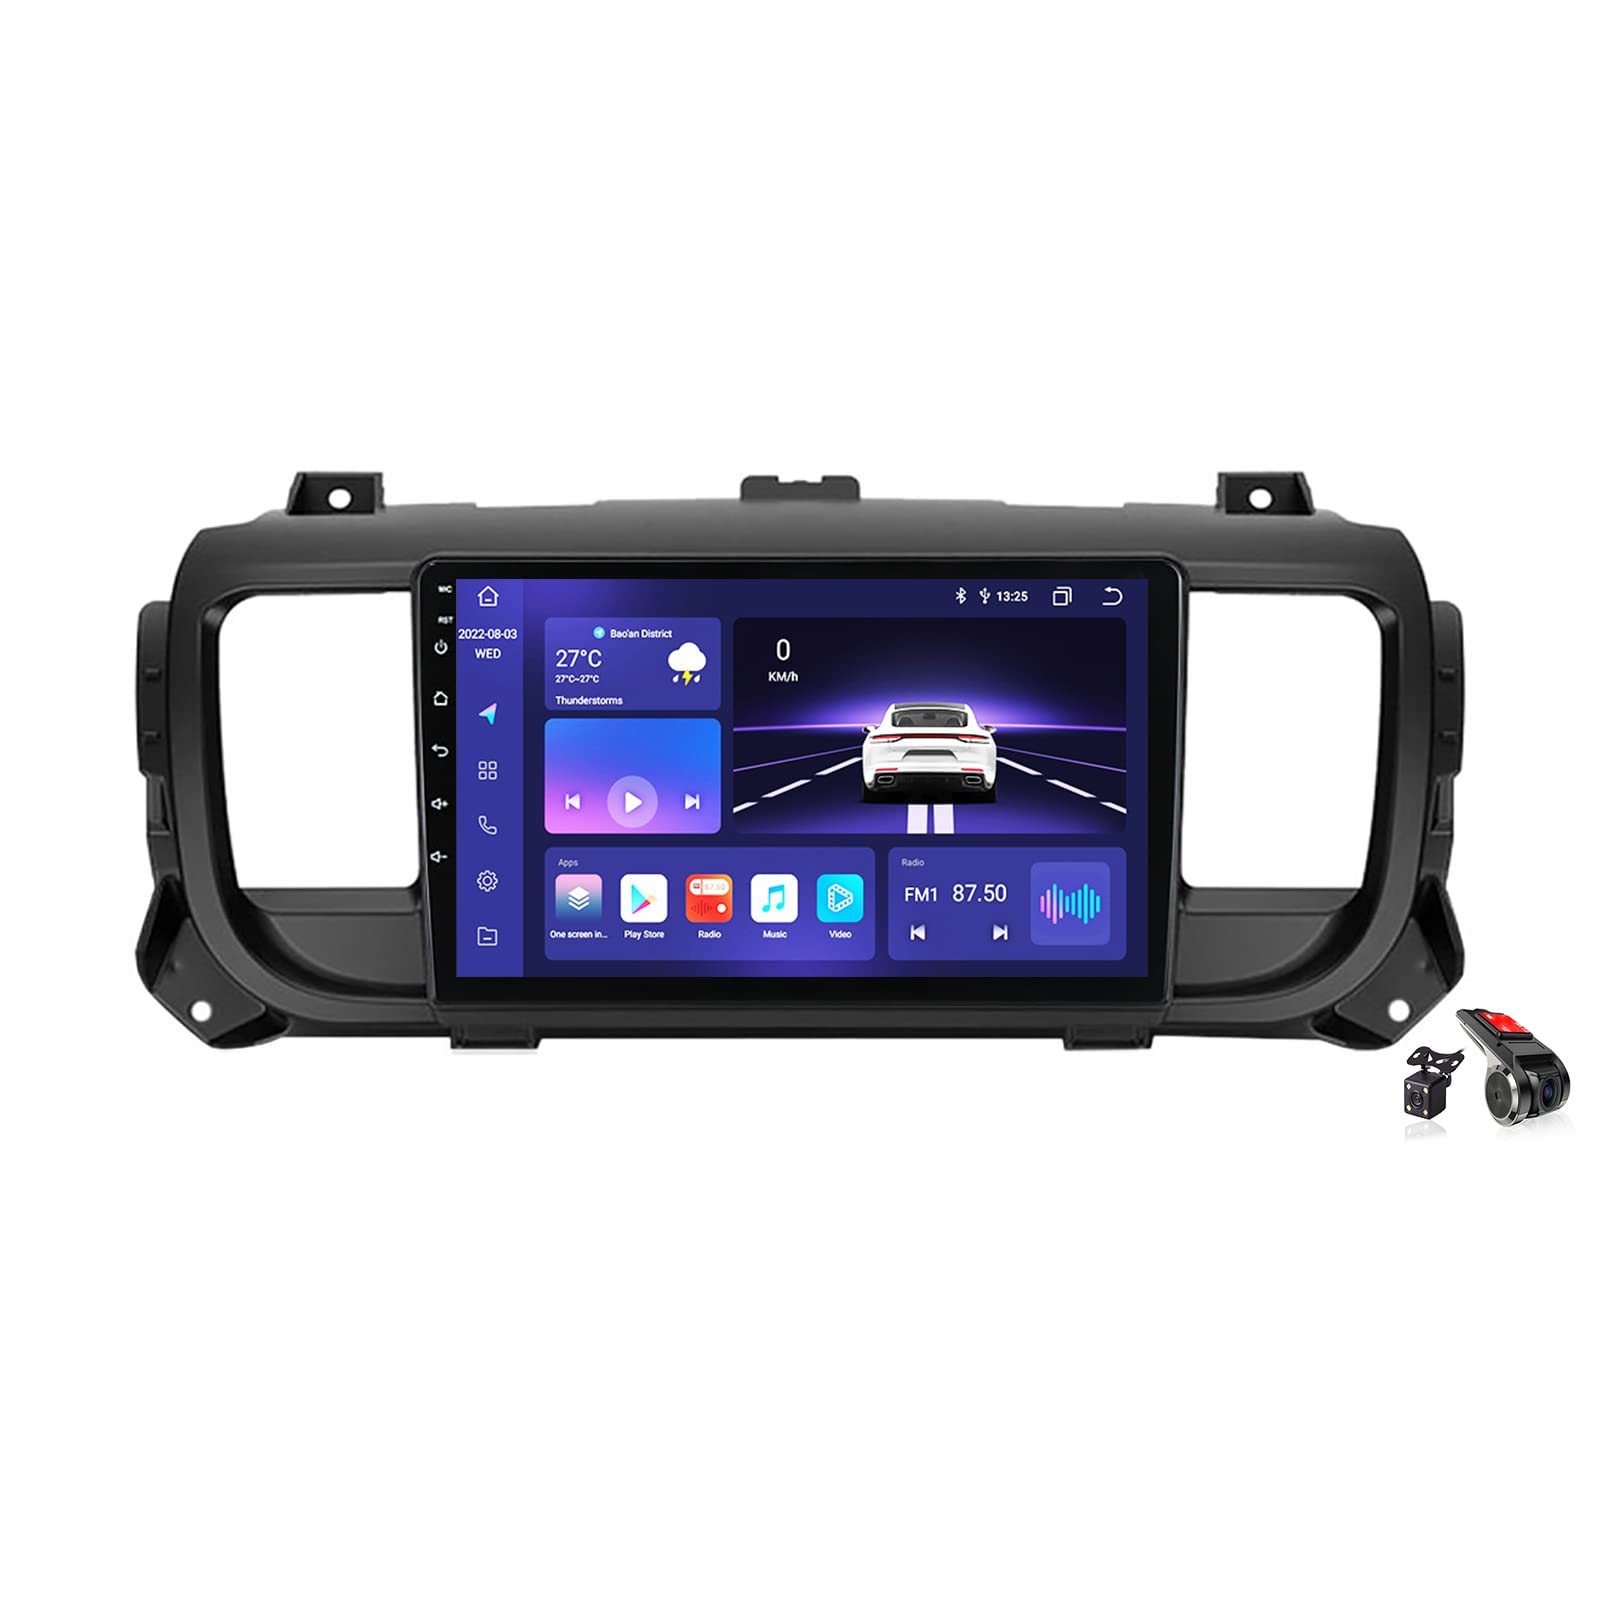 Android 12.0 Navi Autoradio Stereo für C-itroen Jumpy 2016-2021 Sat Nav GPS Sender 9 zoll Touchscreen MP5 Multimedia Video Player FM BT Receiver mit 4G 5G WIFI DSP DVR Carplay,M100s von DLYAXFG